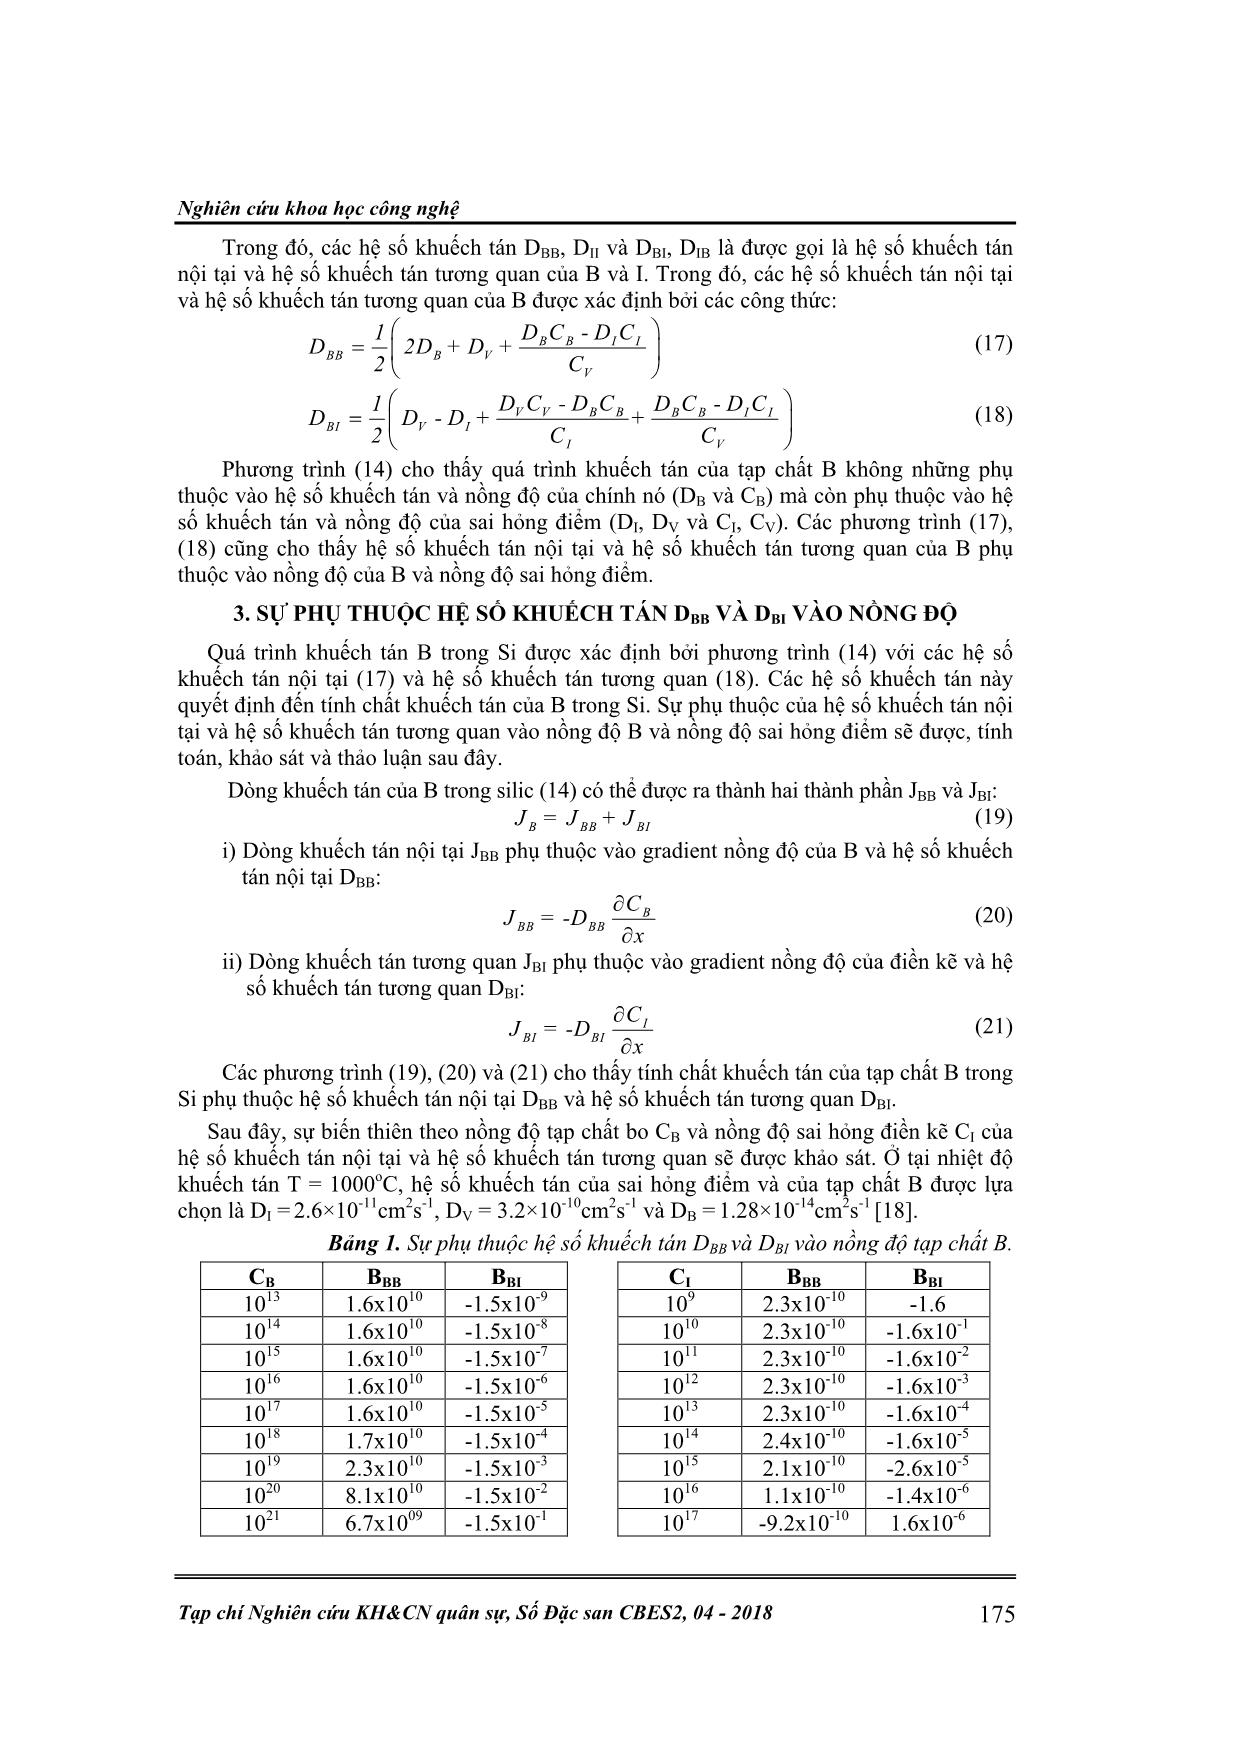 Hệ số khuếch tán nội tại và hệ số khuếch tán tương quan của tạp chất bo trong silic trang 3